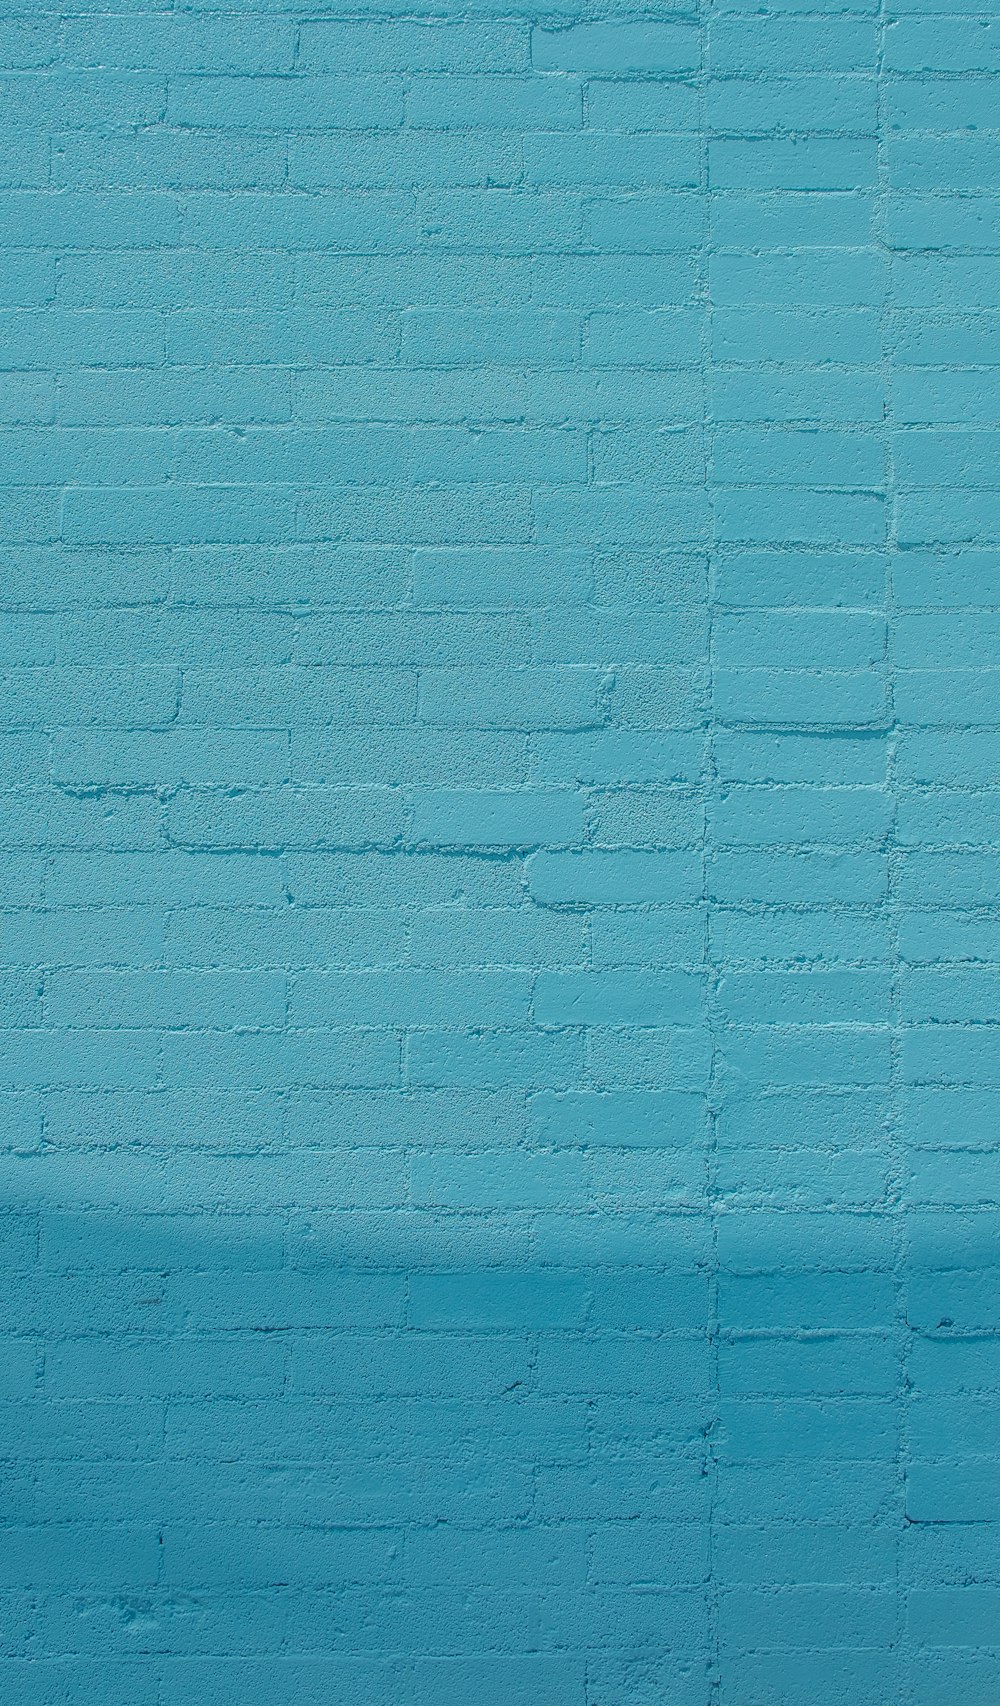 30k+ imágenes de azul pastel | Descargar imágenes gratis en Unsplash